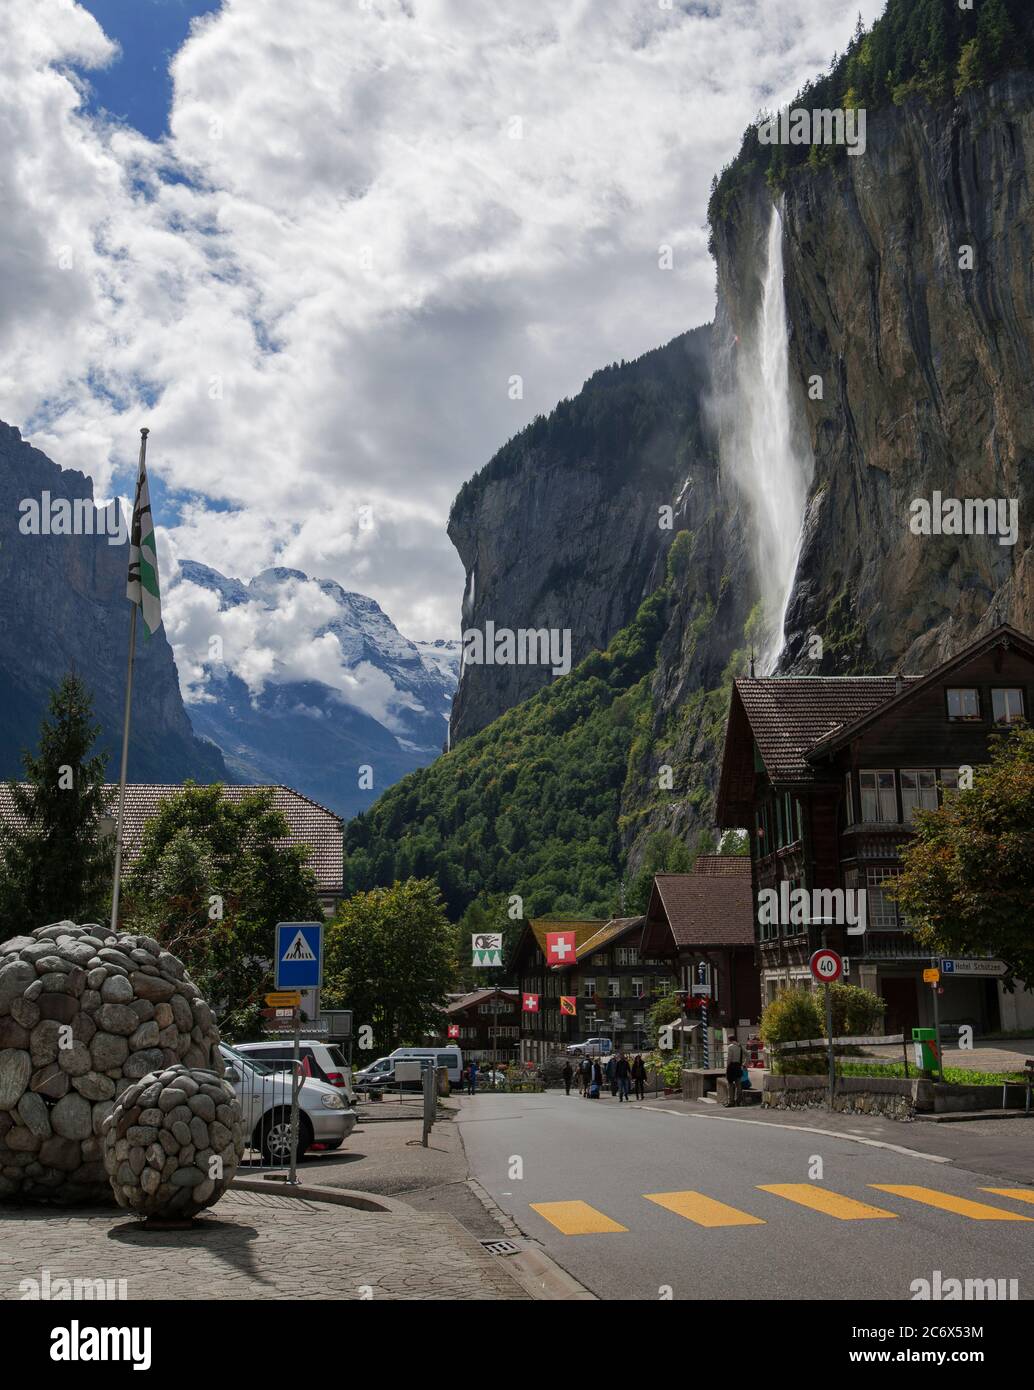 Le Cascate di Staubbach sono la cascata caratteristica della famosa Valle di Lauterbrunnen, caratterizzata da un tuffo di 297 m dietro le principali Alpi svizzere, la Svizzera Foto Stock